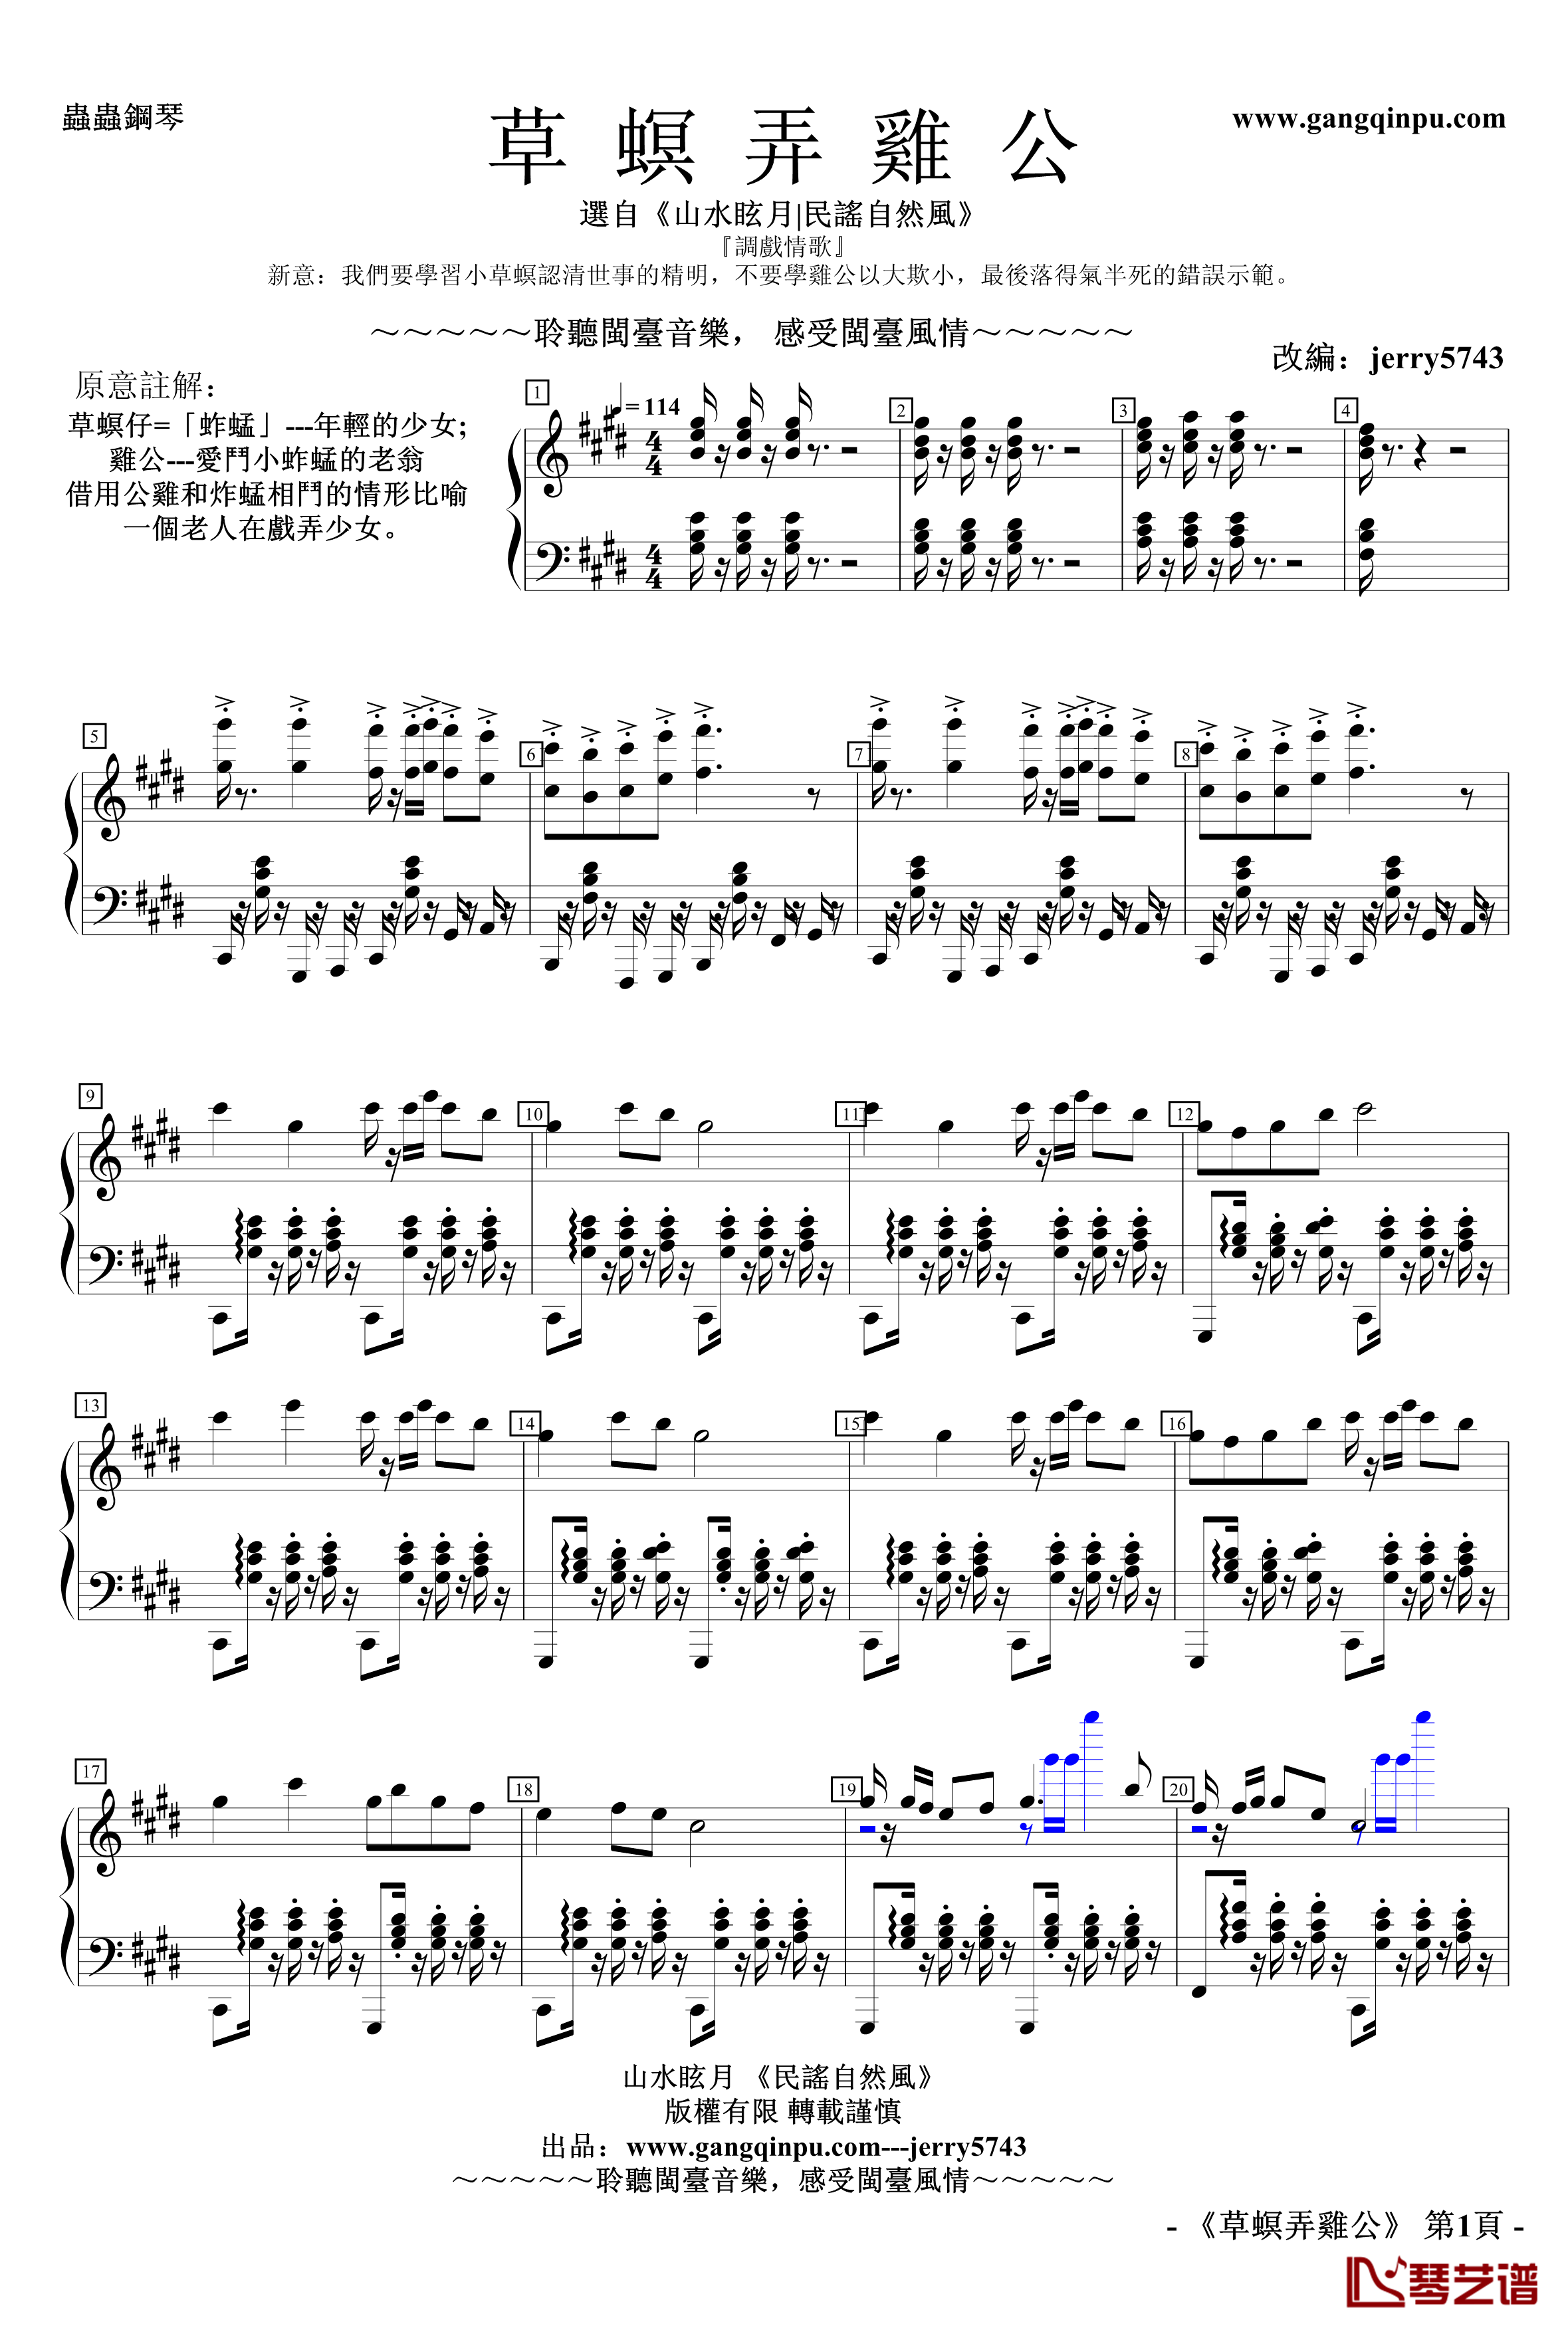 草螟弄雞公钢琴谱-jerry5743-自然風No.11